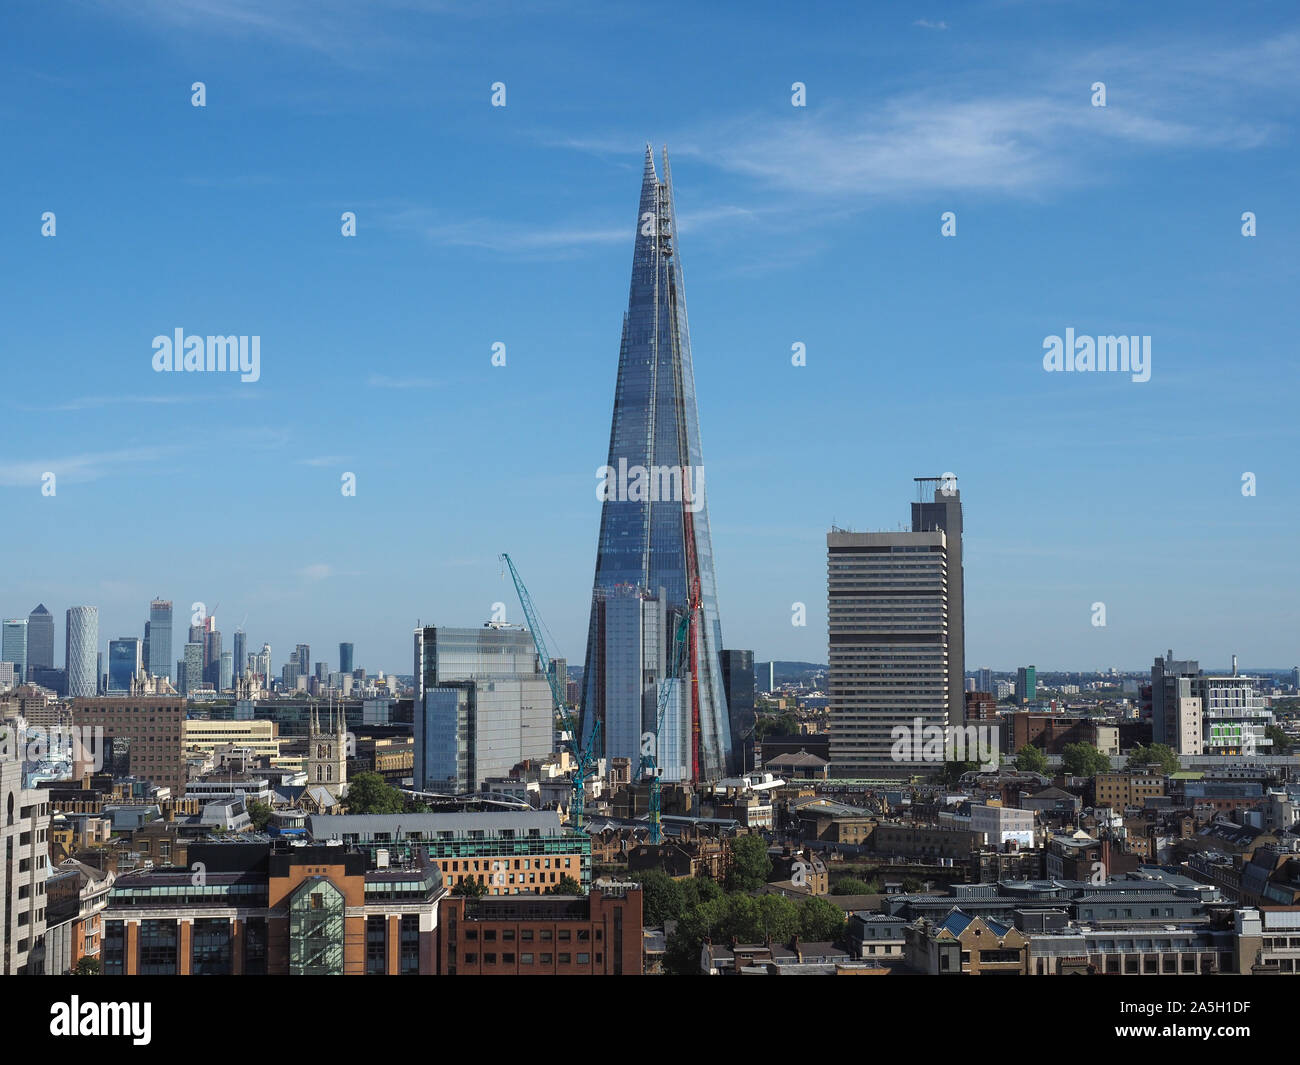 Londres, UK - circa 2019 SEPTEMBRE : Le gratte-ciel Shard conçu par l'architecte italien Renzo Piano, c'est le plus haut bâtiment de la ville Banque D'Images